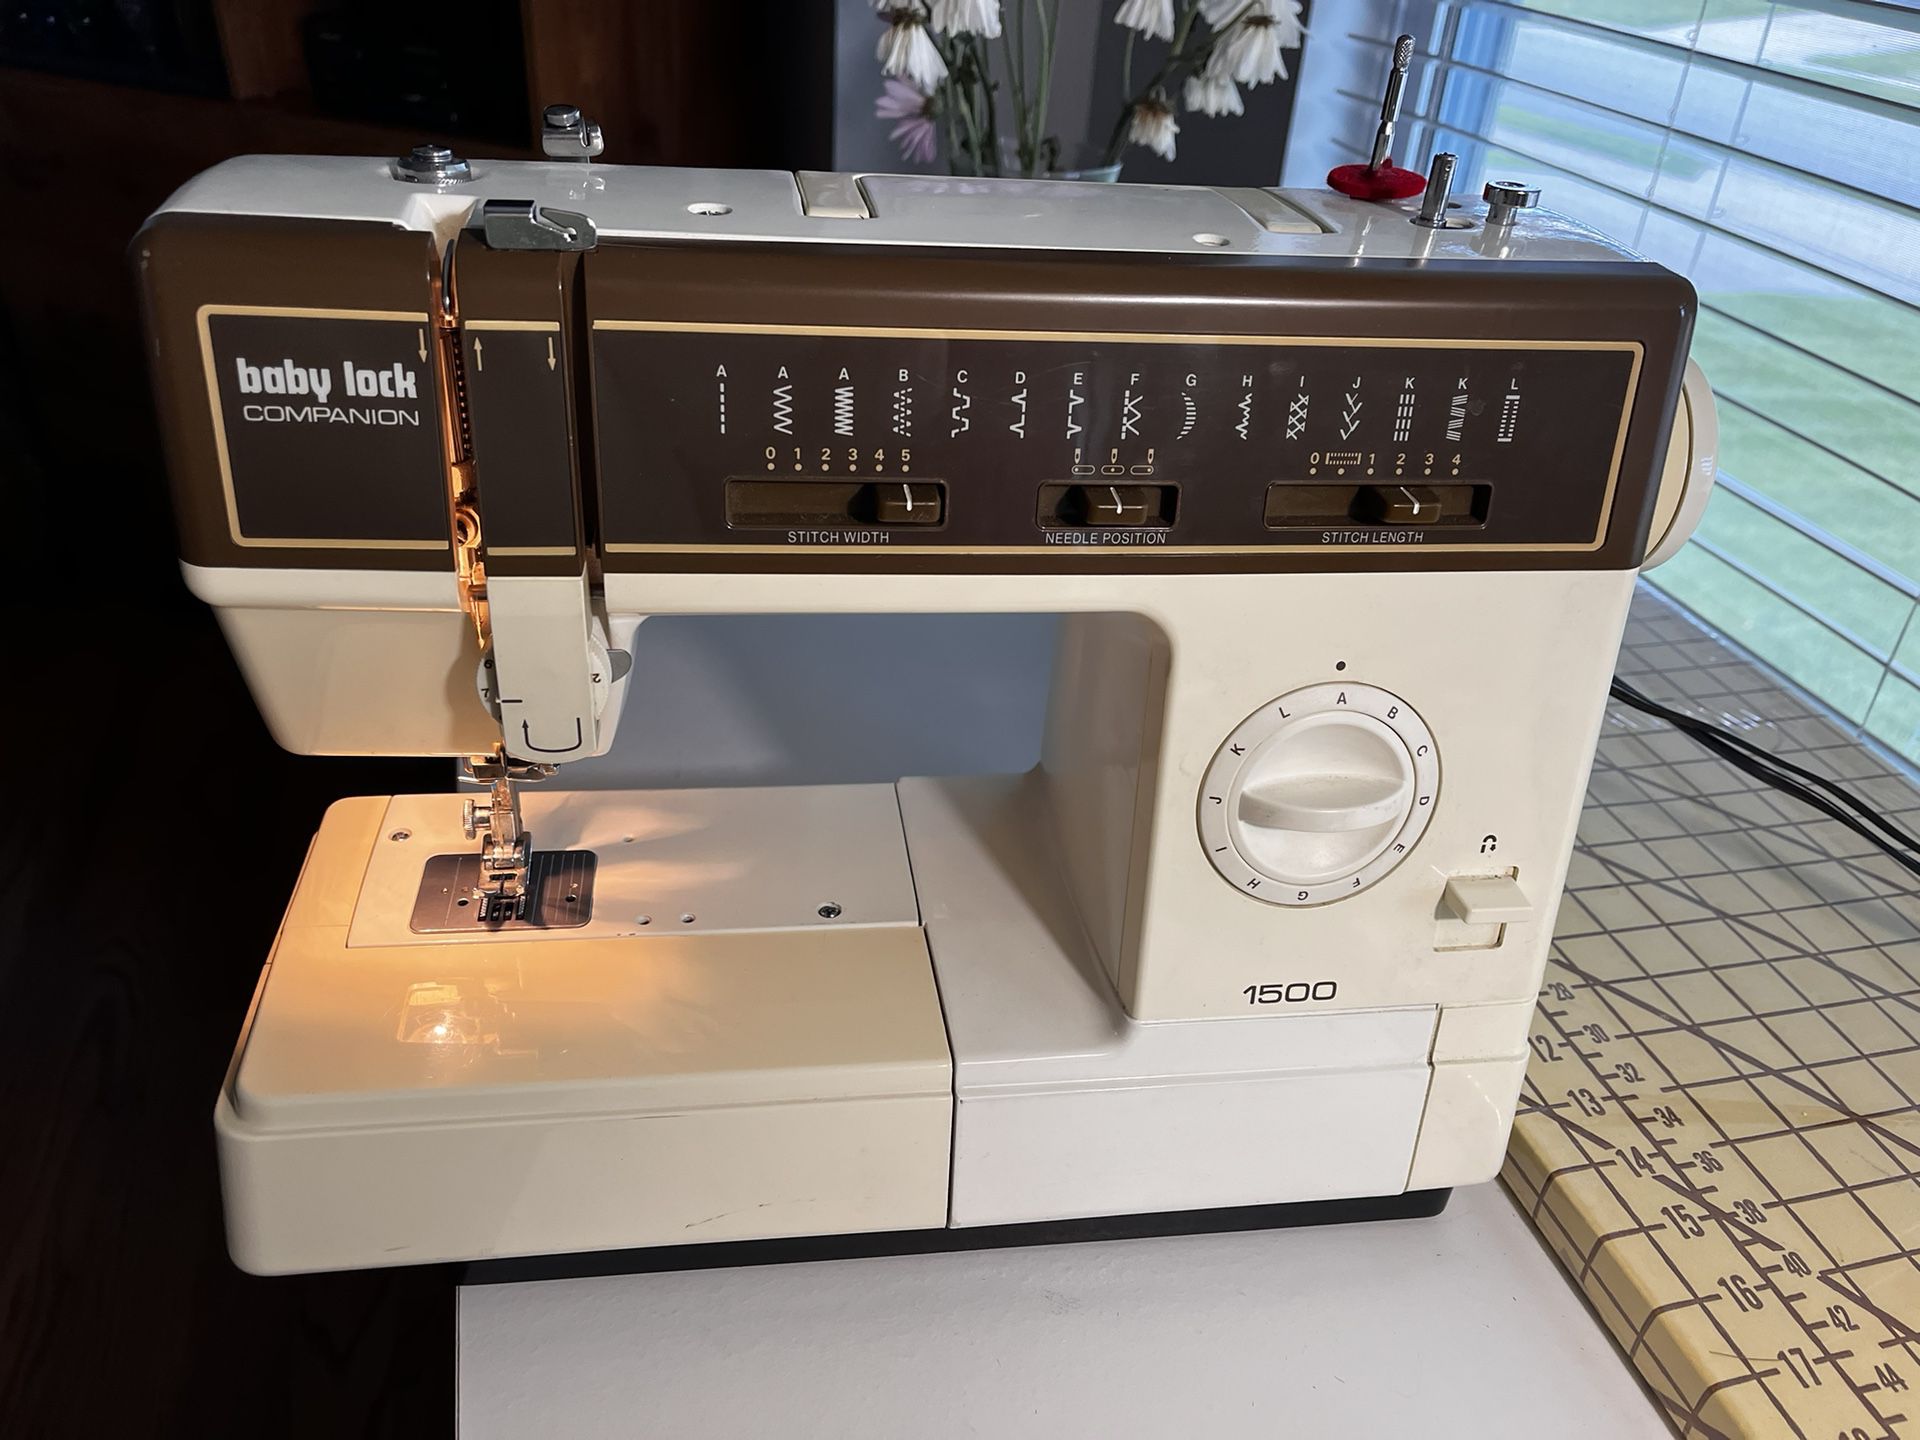 Baby lock Sewing machine